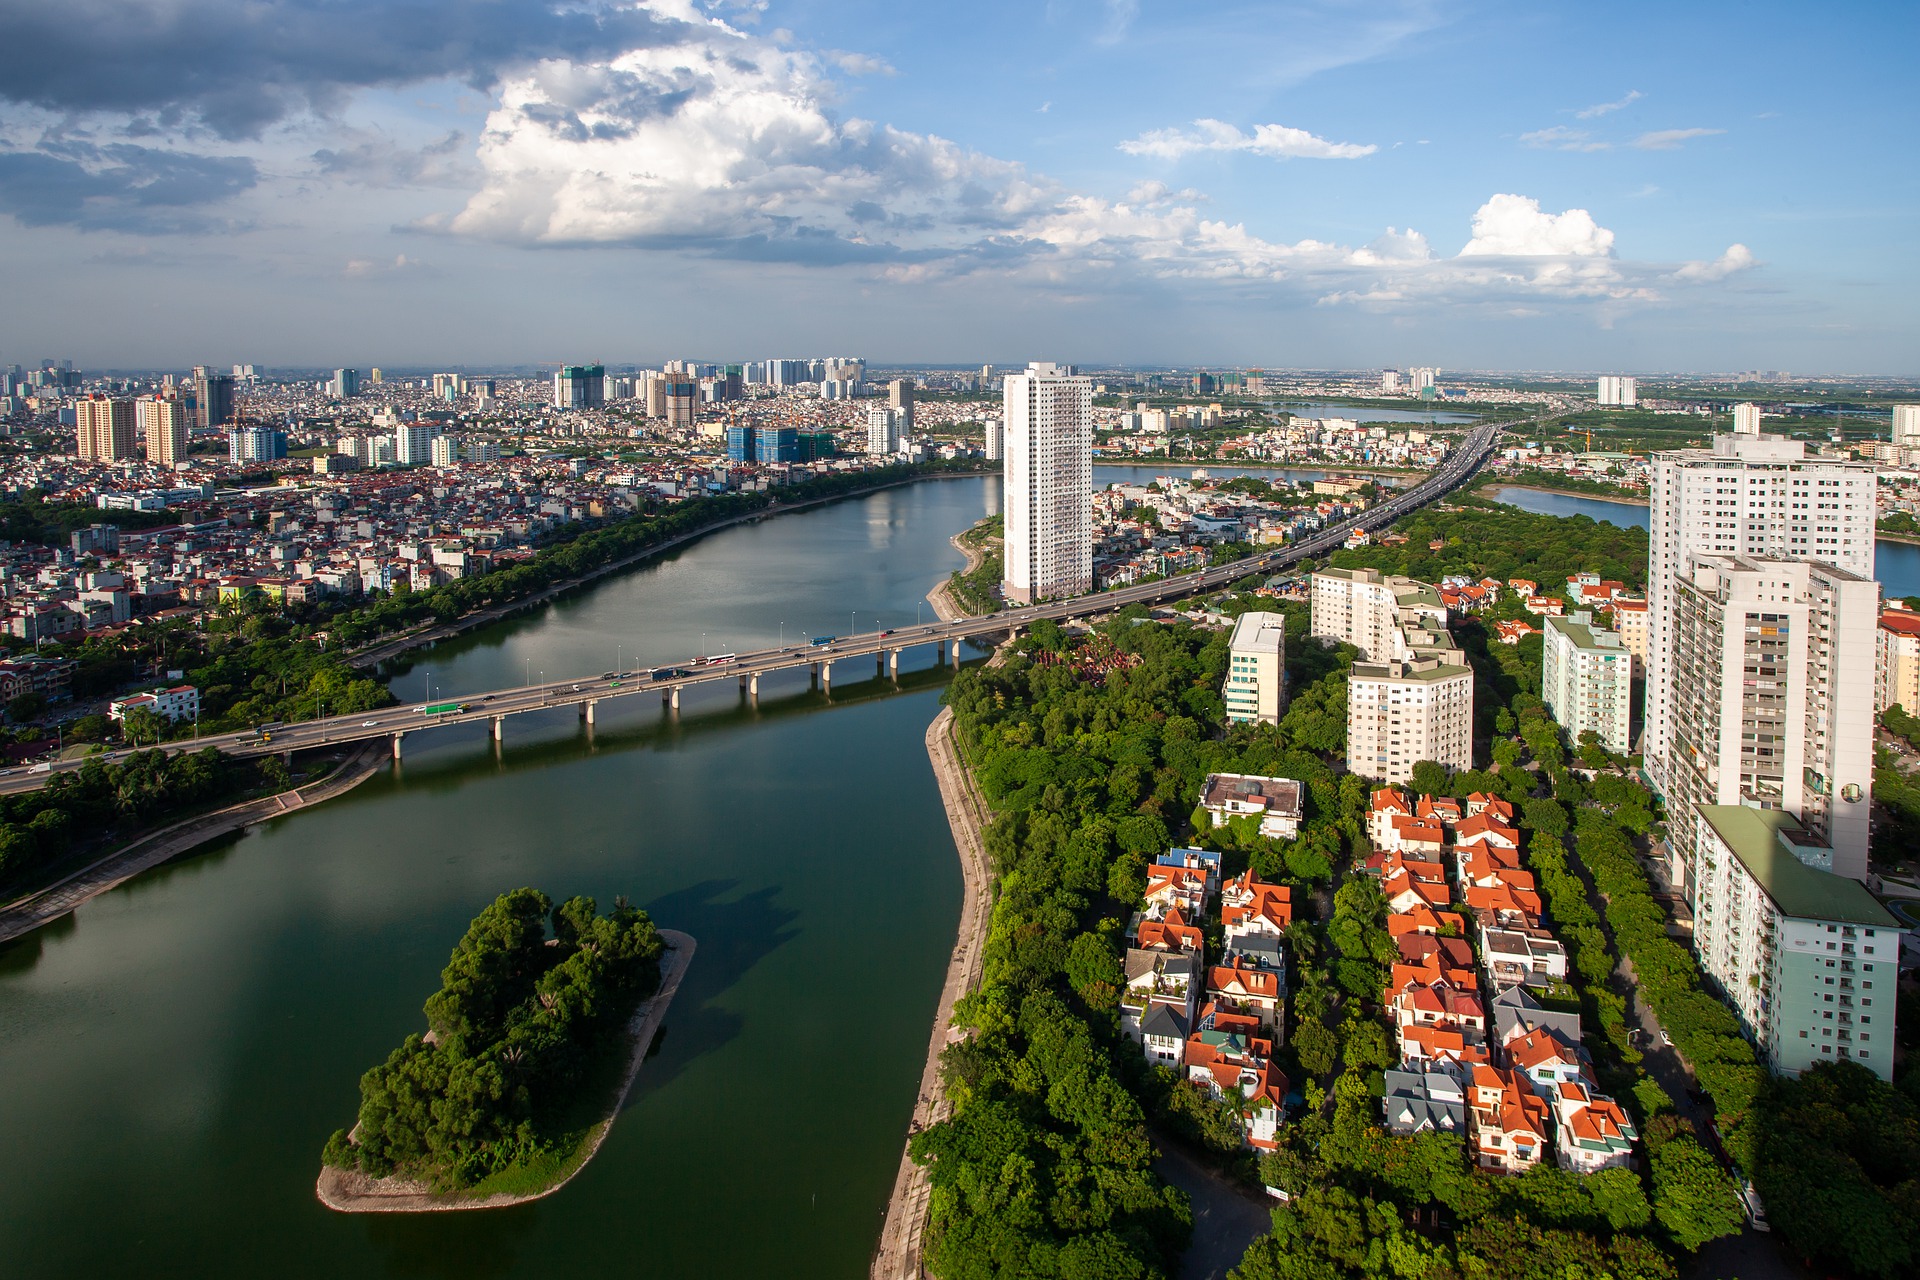 aerial view of waterway and buildings in vietnam